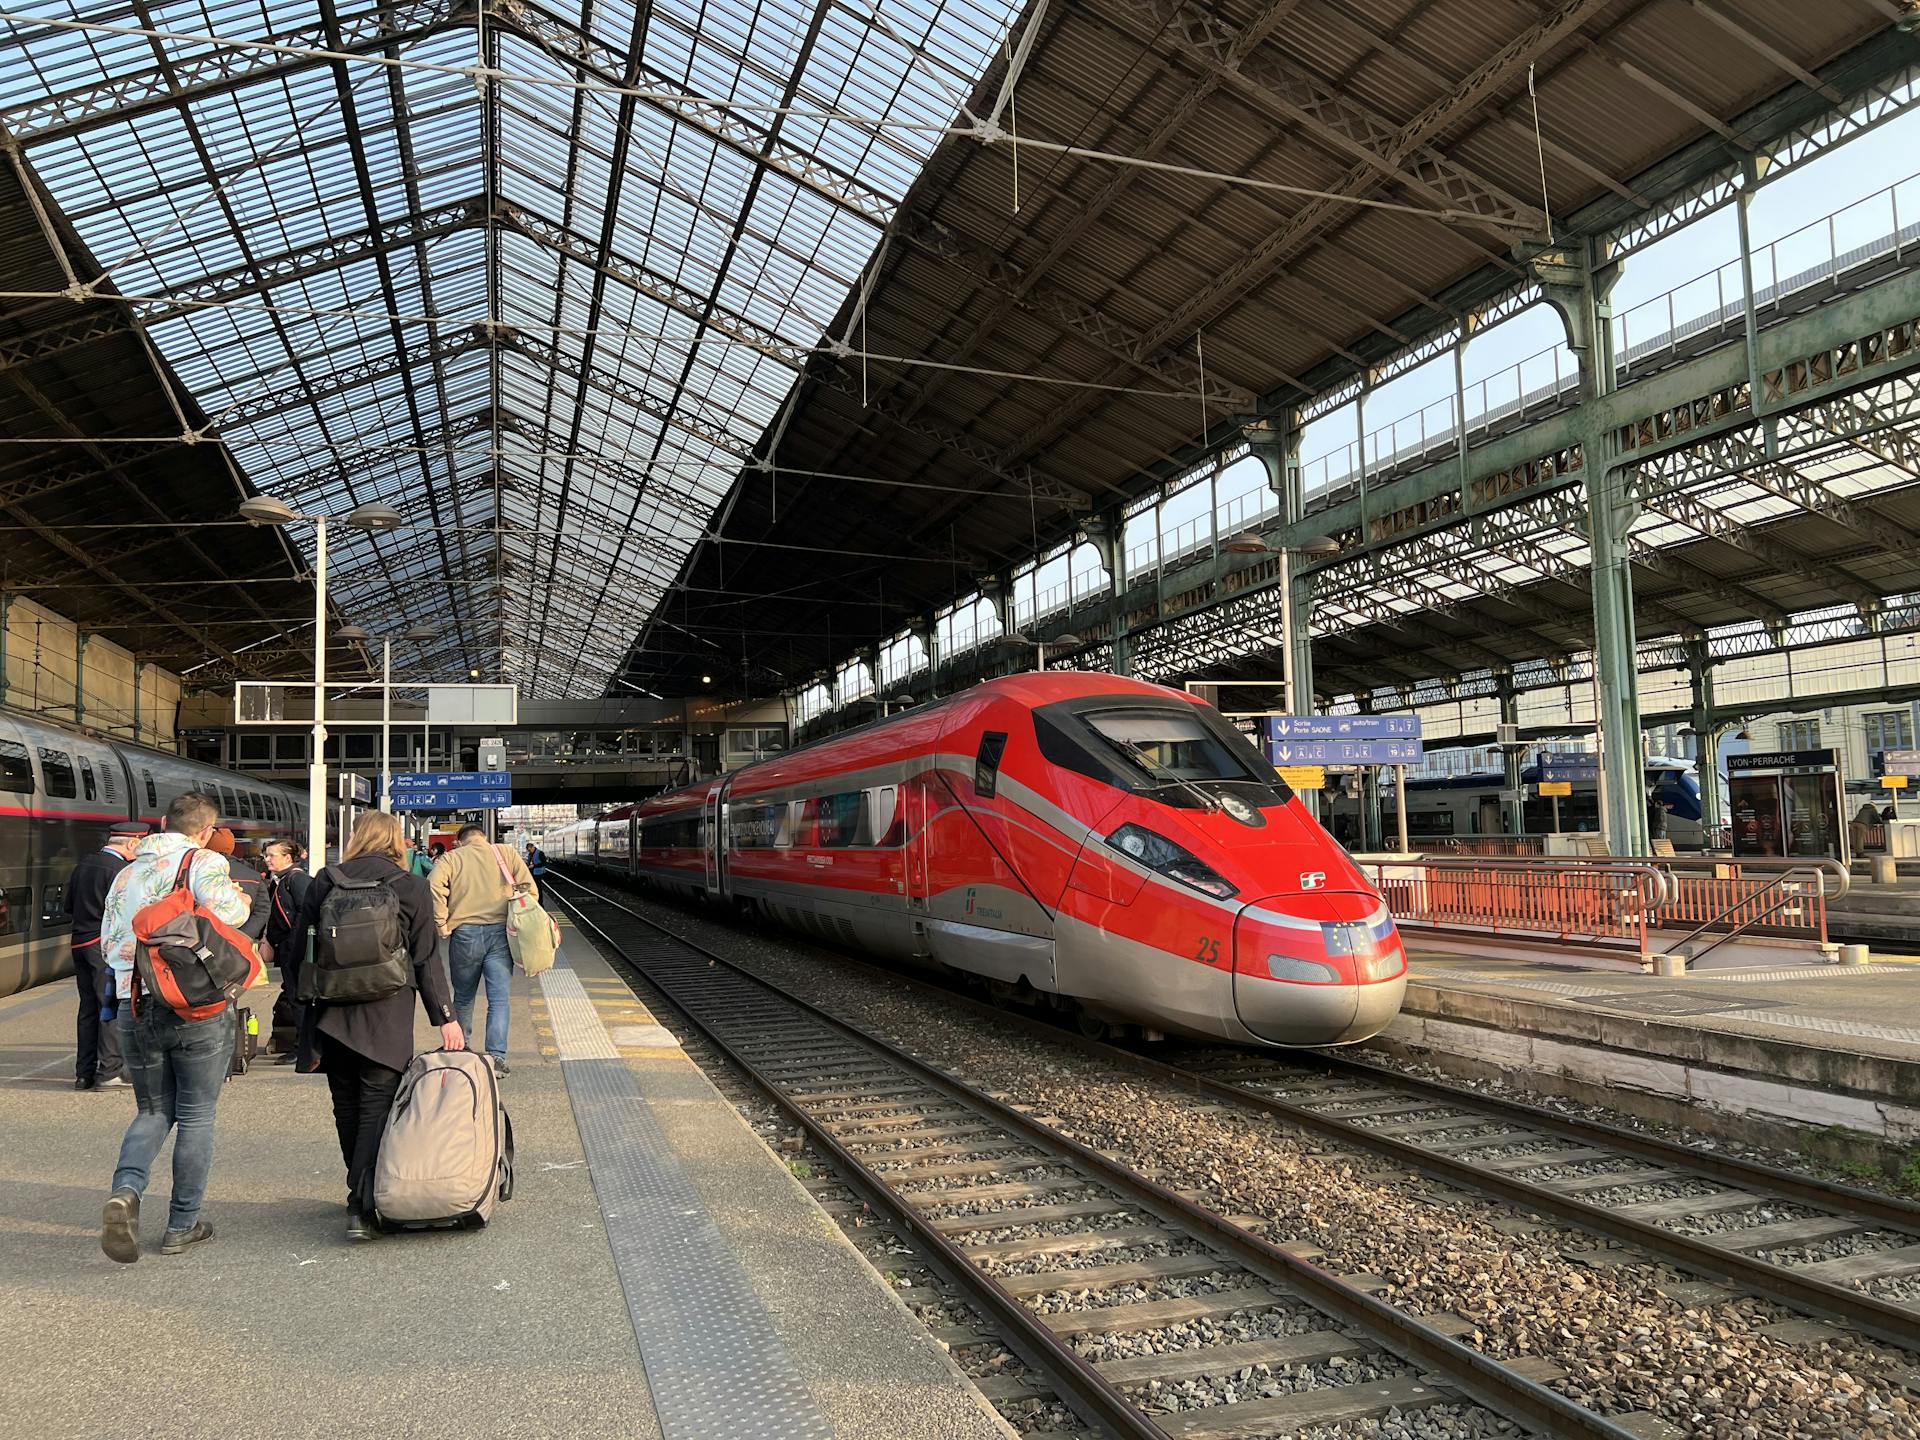 Lyon Perrache station